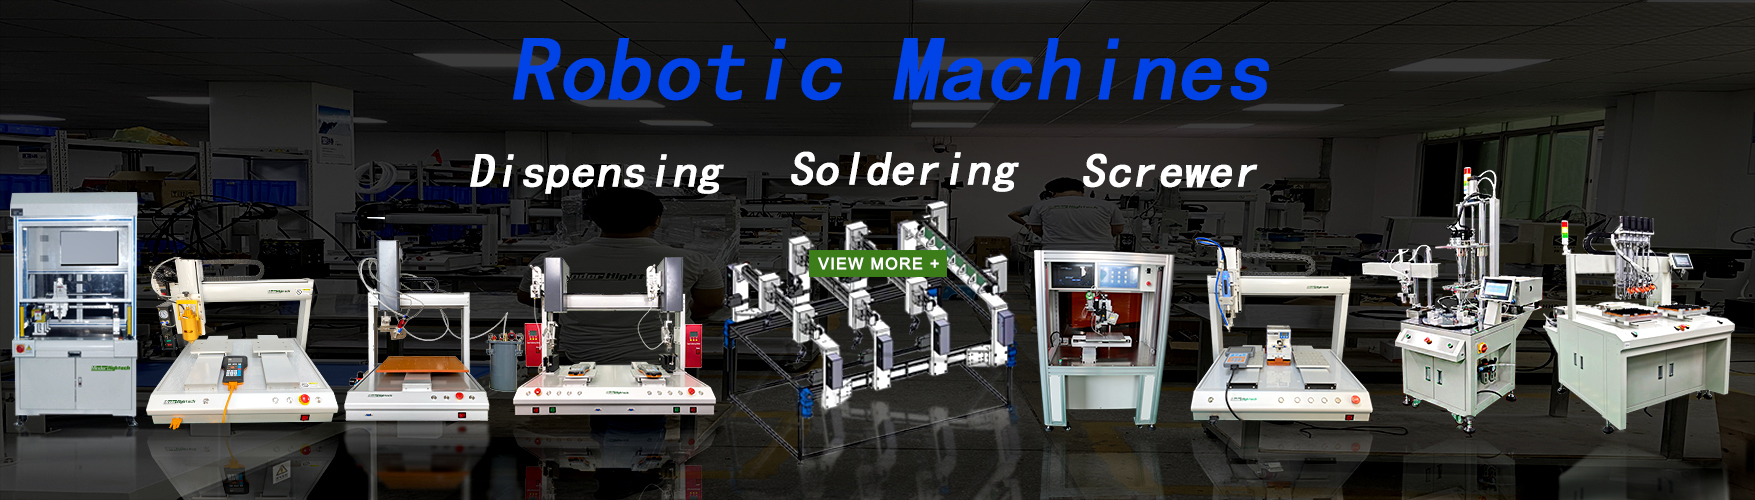 soldering robot